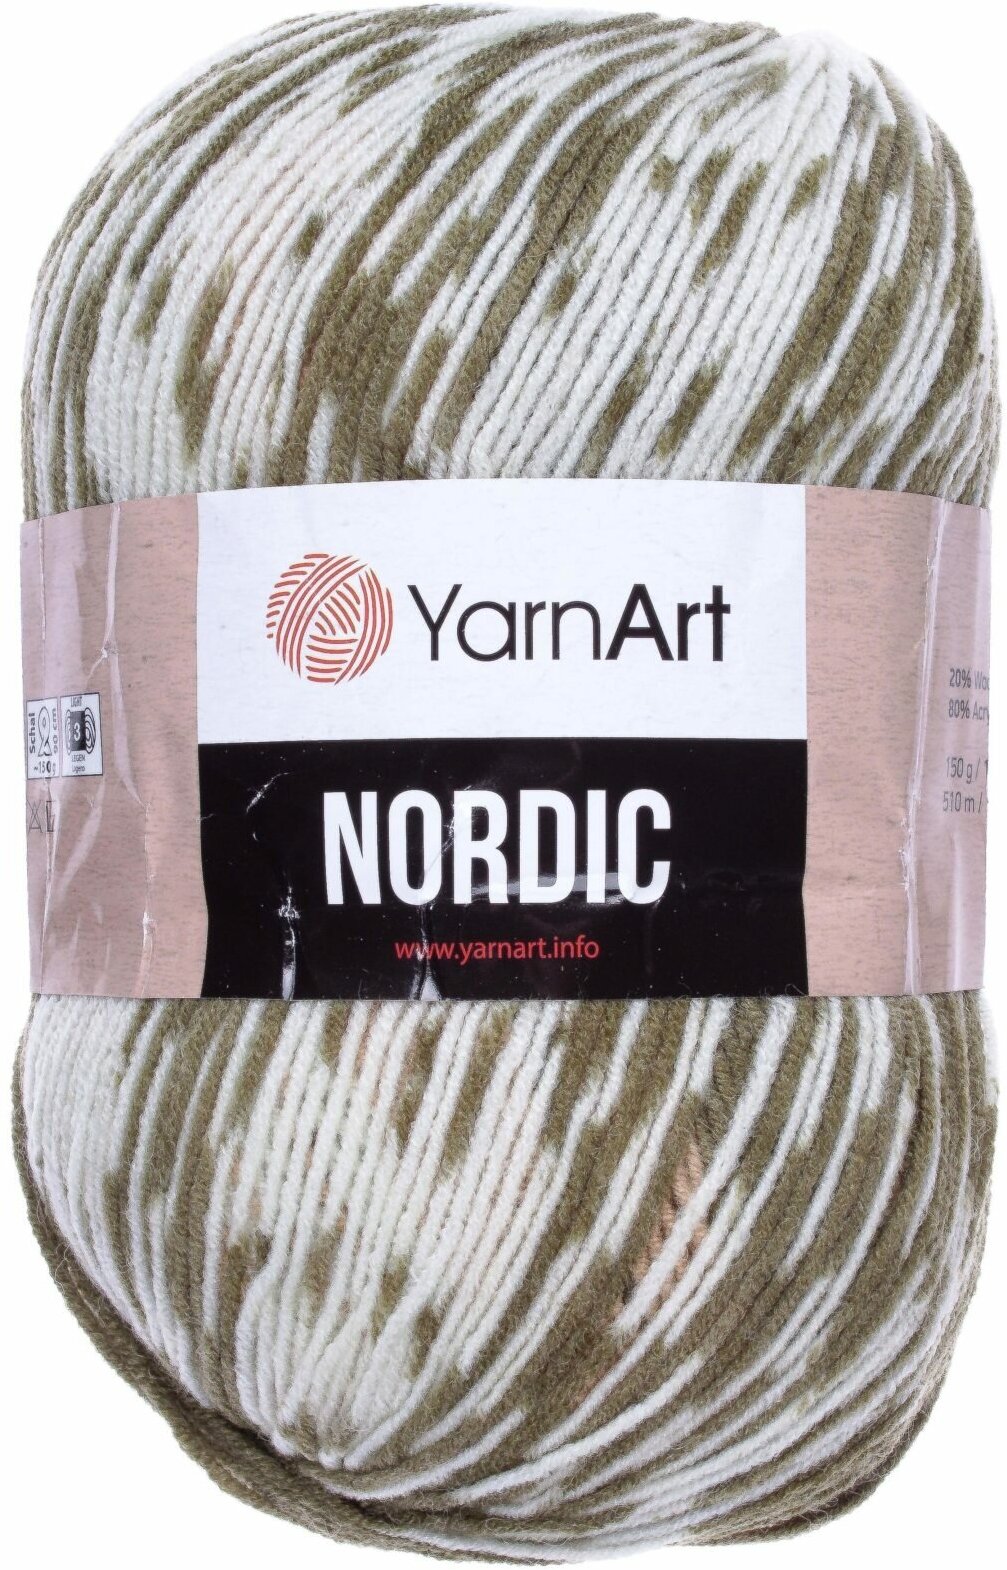 Пряжа Yarnart Nordic белый-бежевый-хаки (651), 20%шерсть/80%акрил, 510м, 150г, 1шт